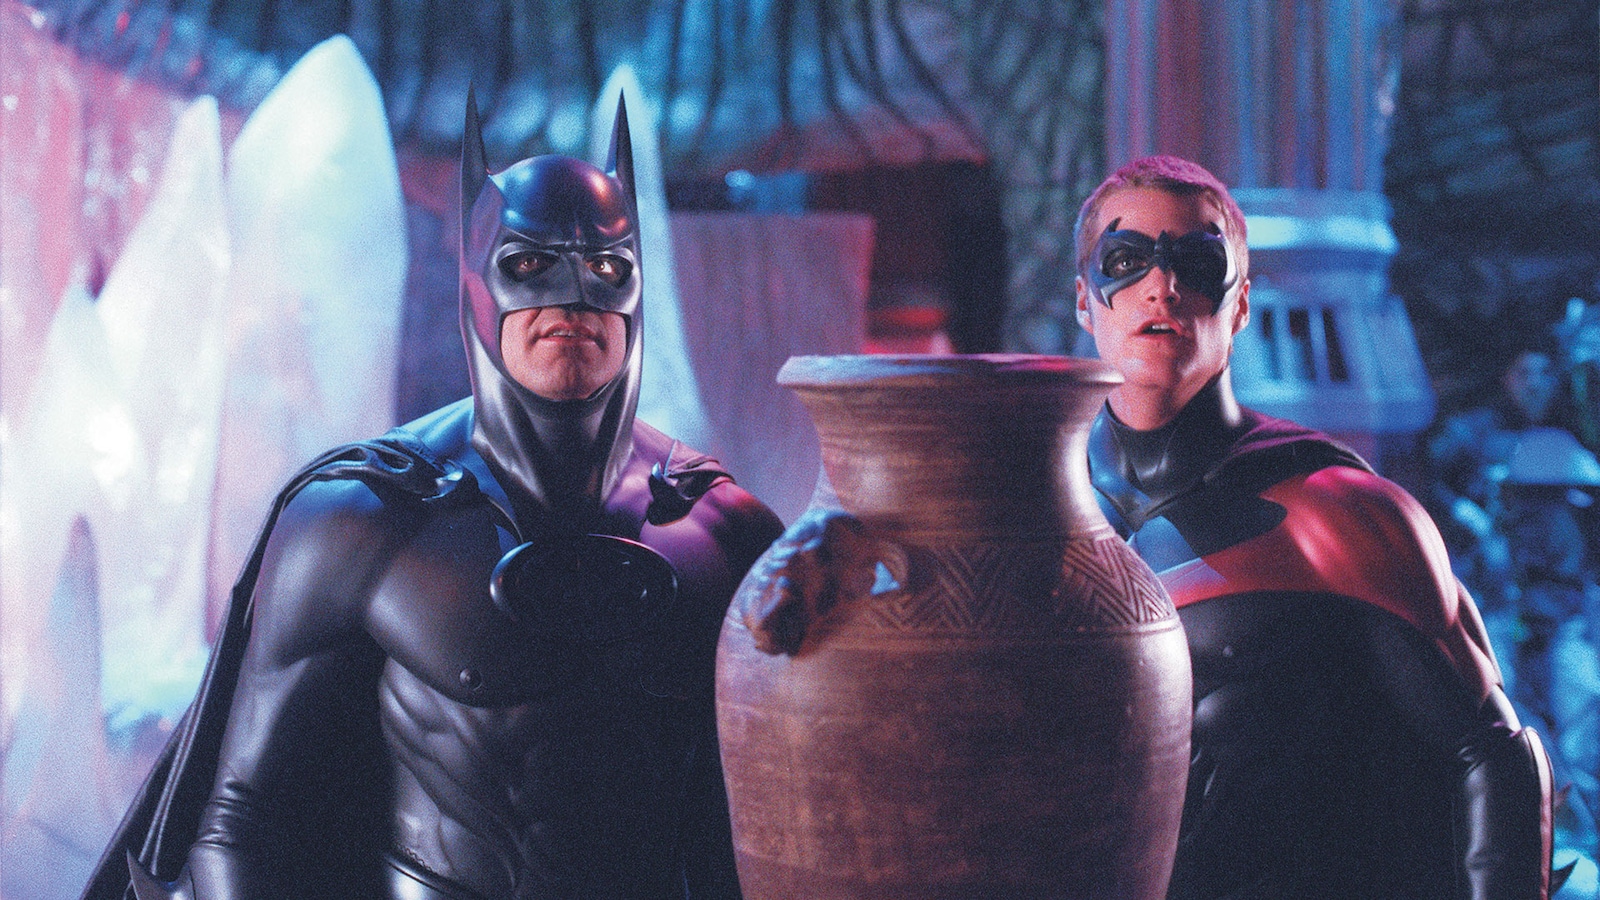 batman-and-robin-1997